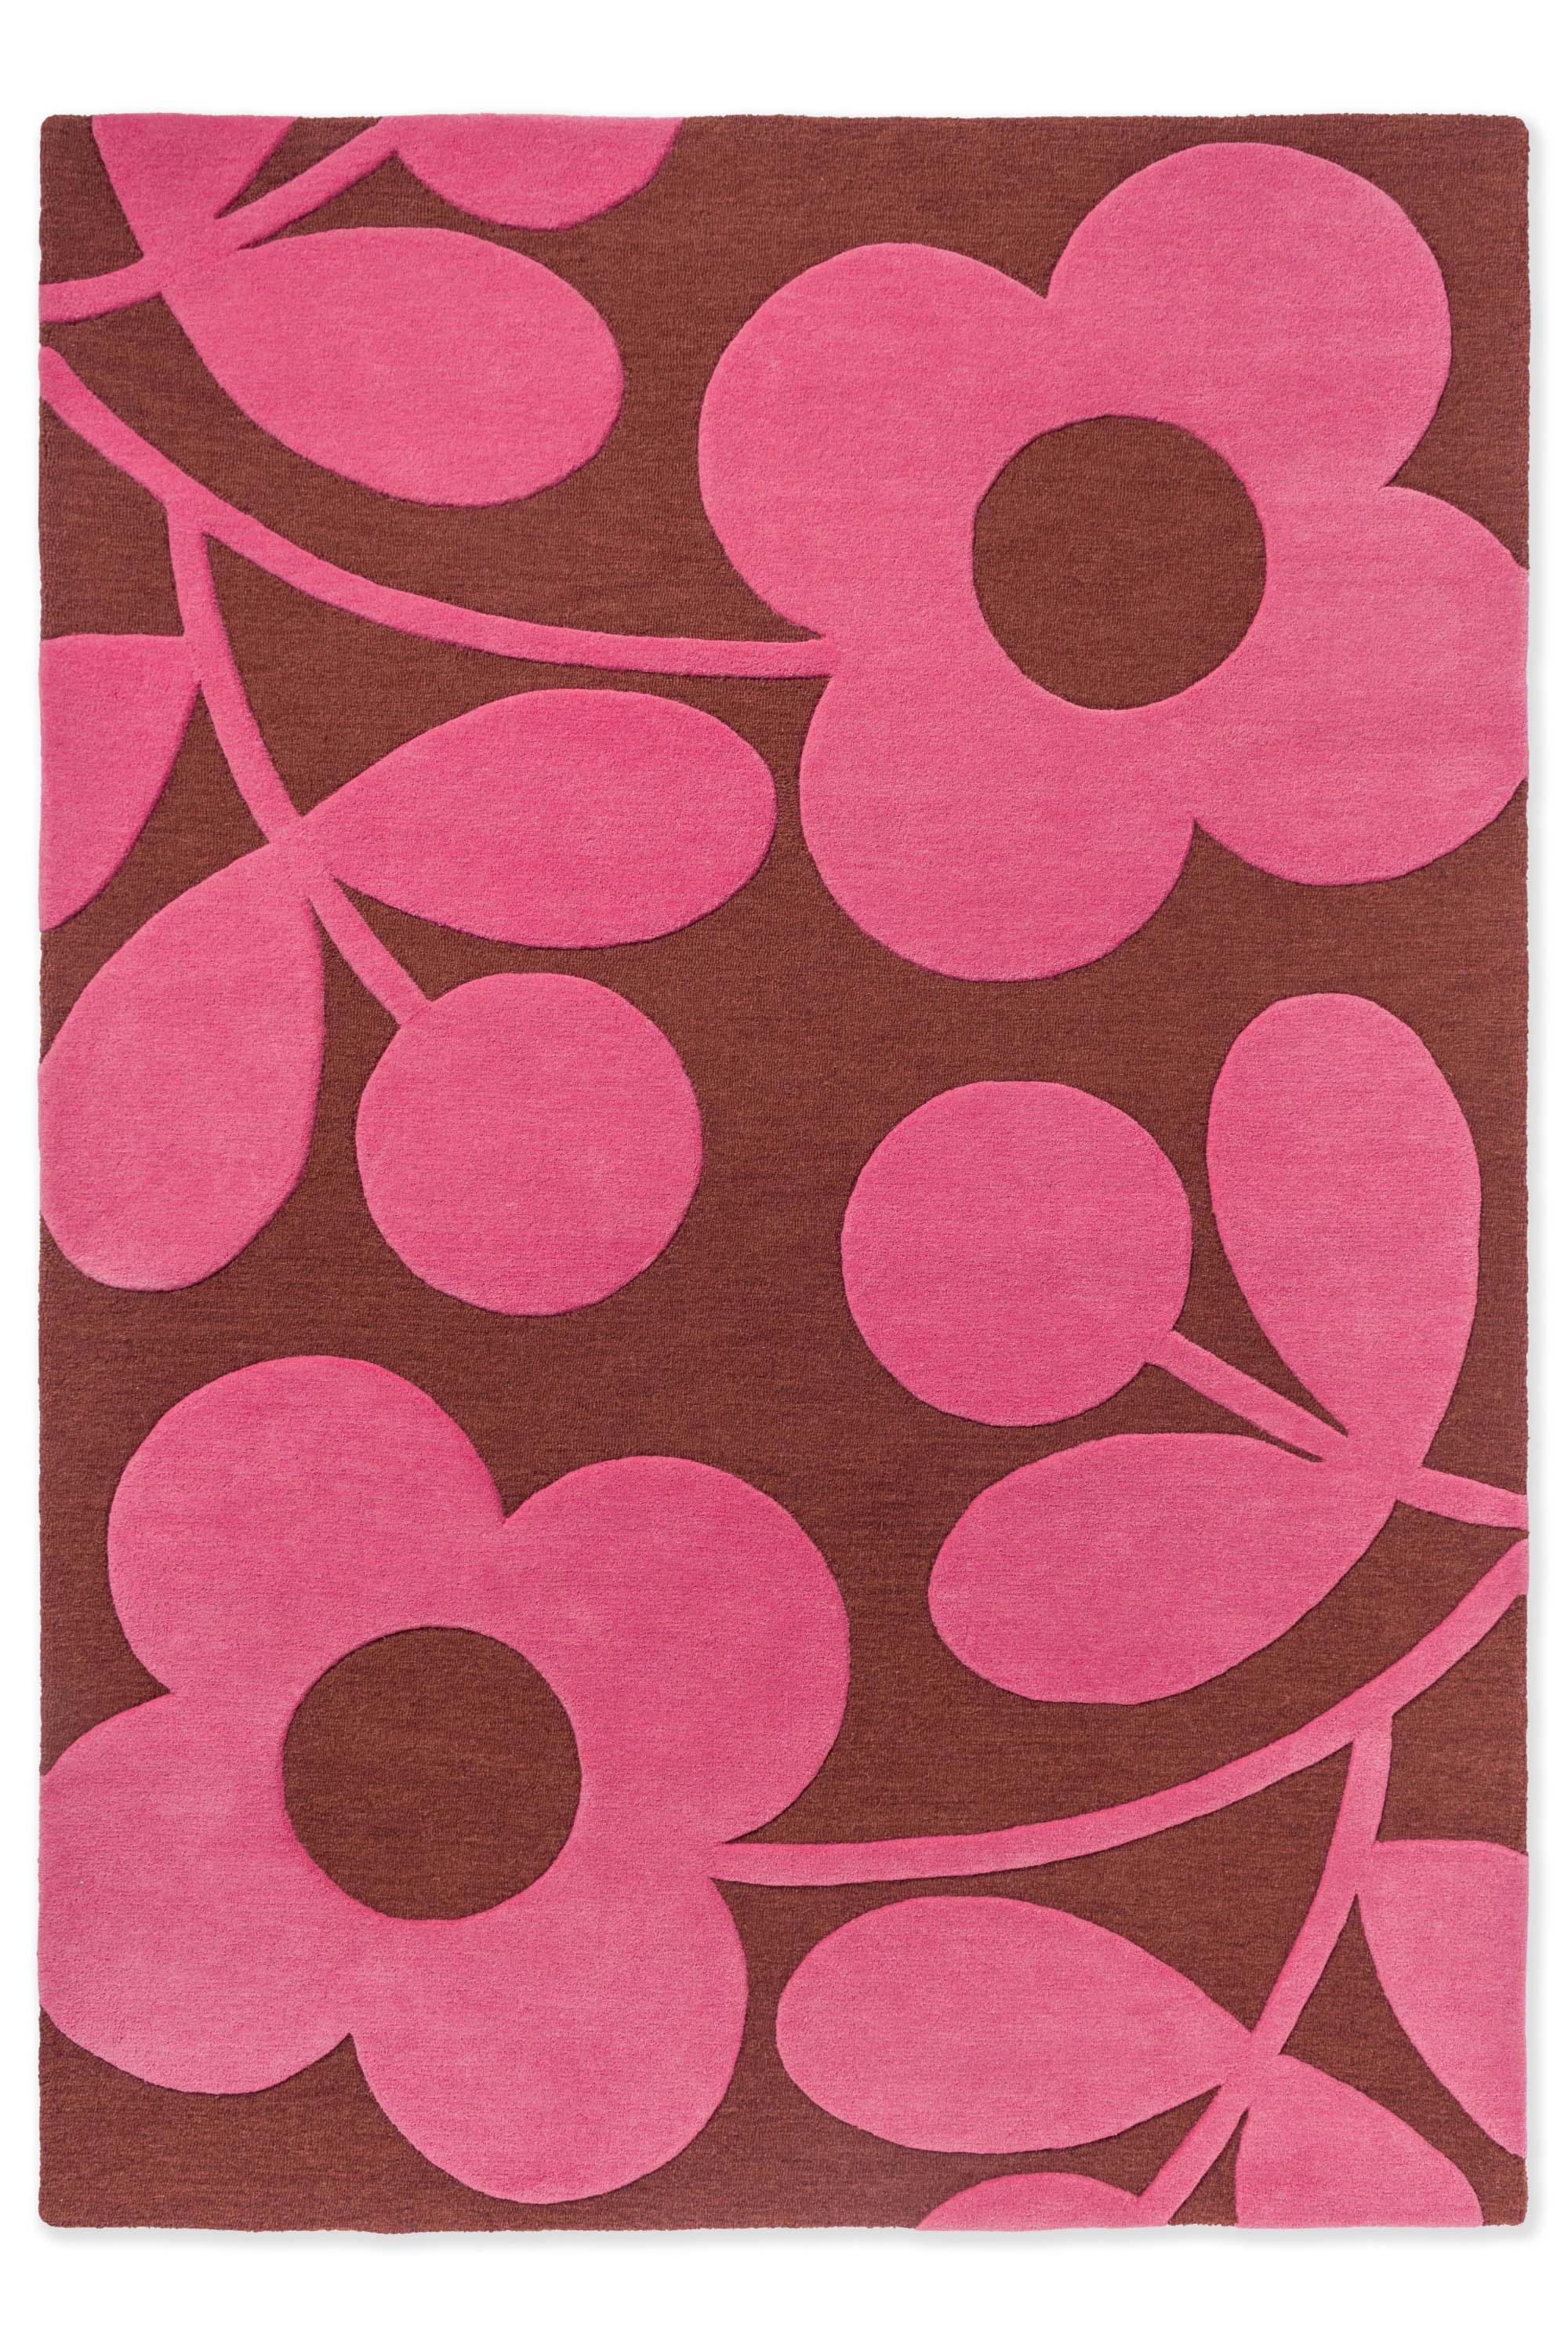 Modern pink floral rug